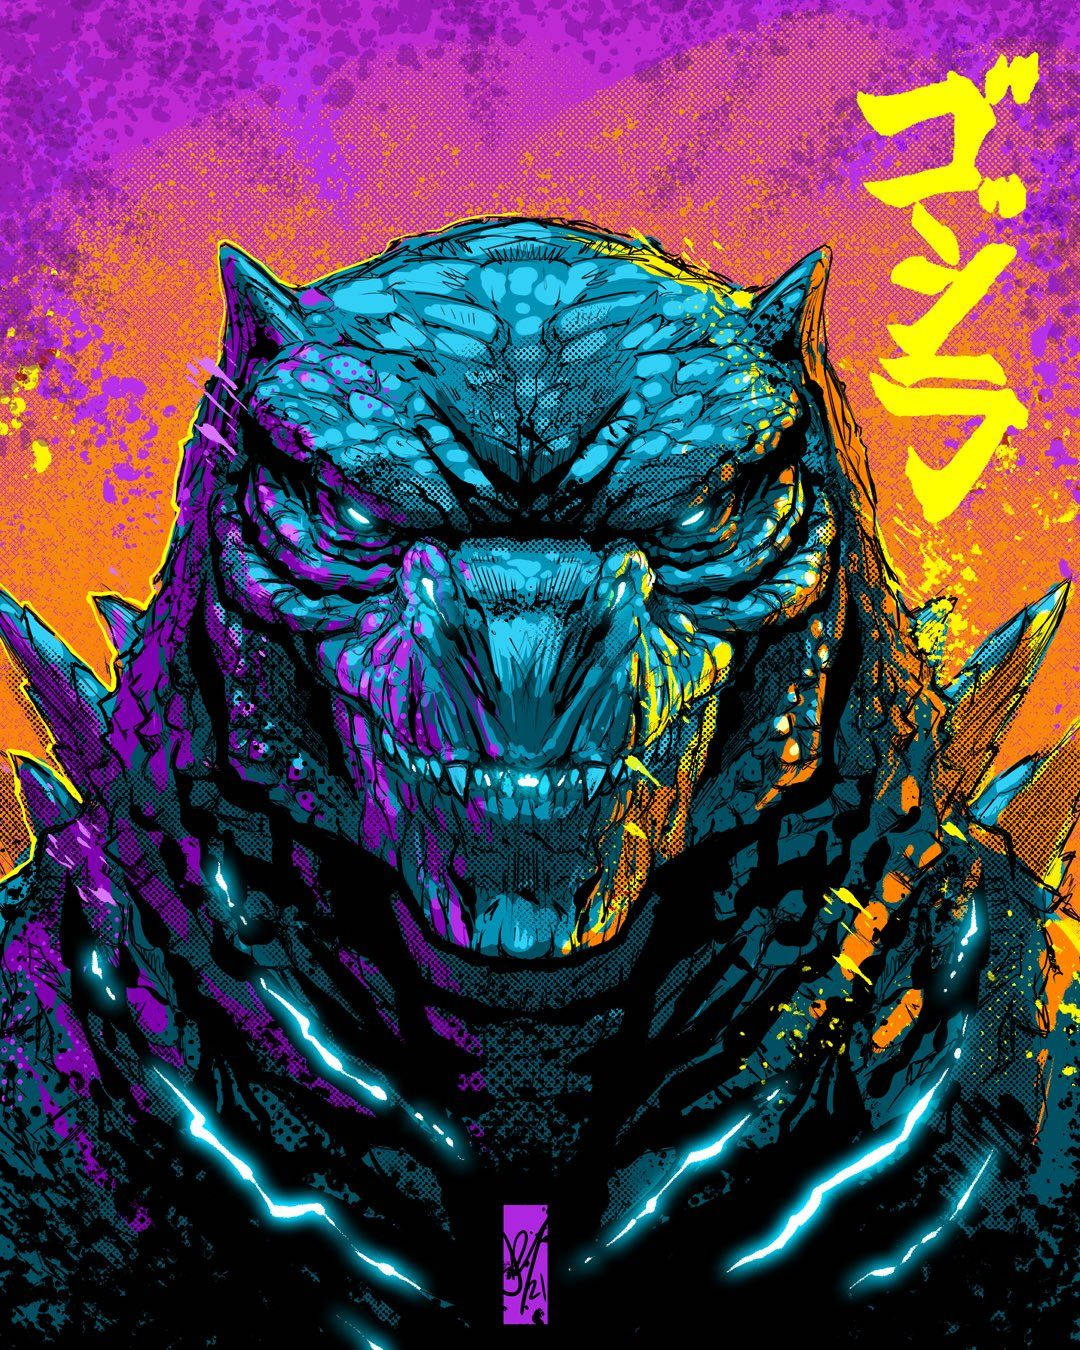 Godzillafilmaffischen. Wallpaper